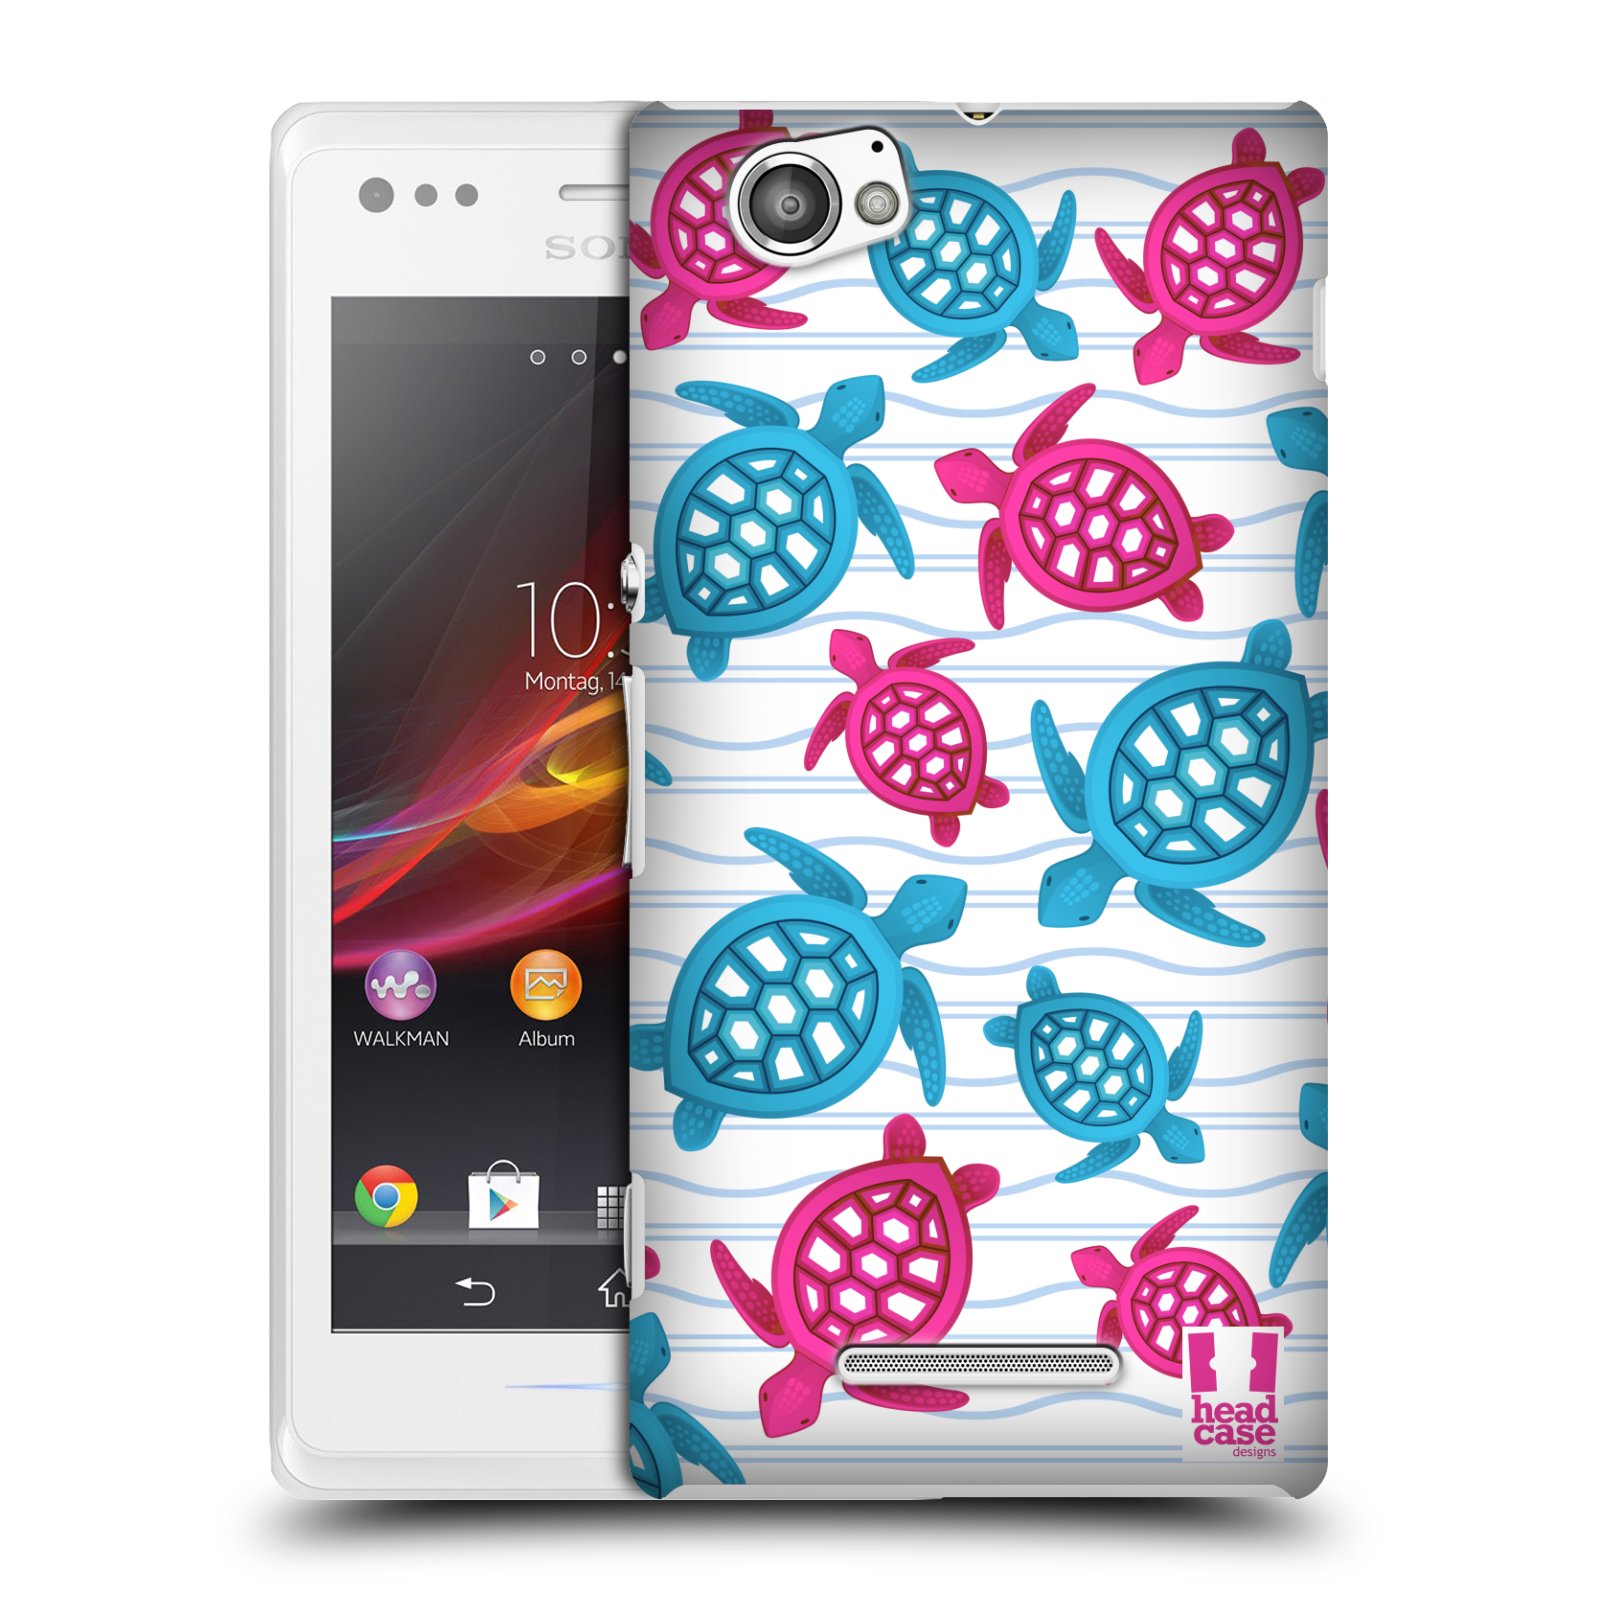 HEAD CASE plastový obal na mobil Sony Xperia M vzor mořský živočich želva modrá a růžová